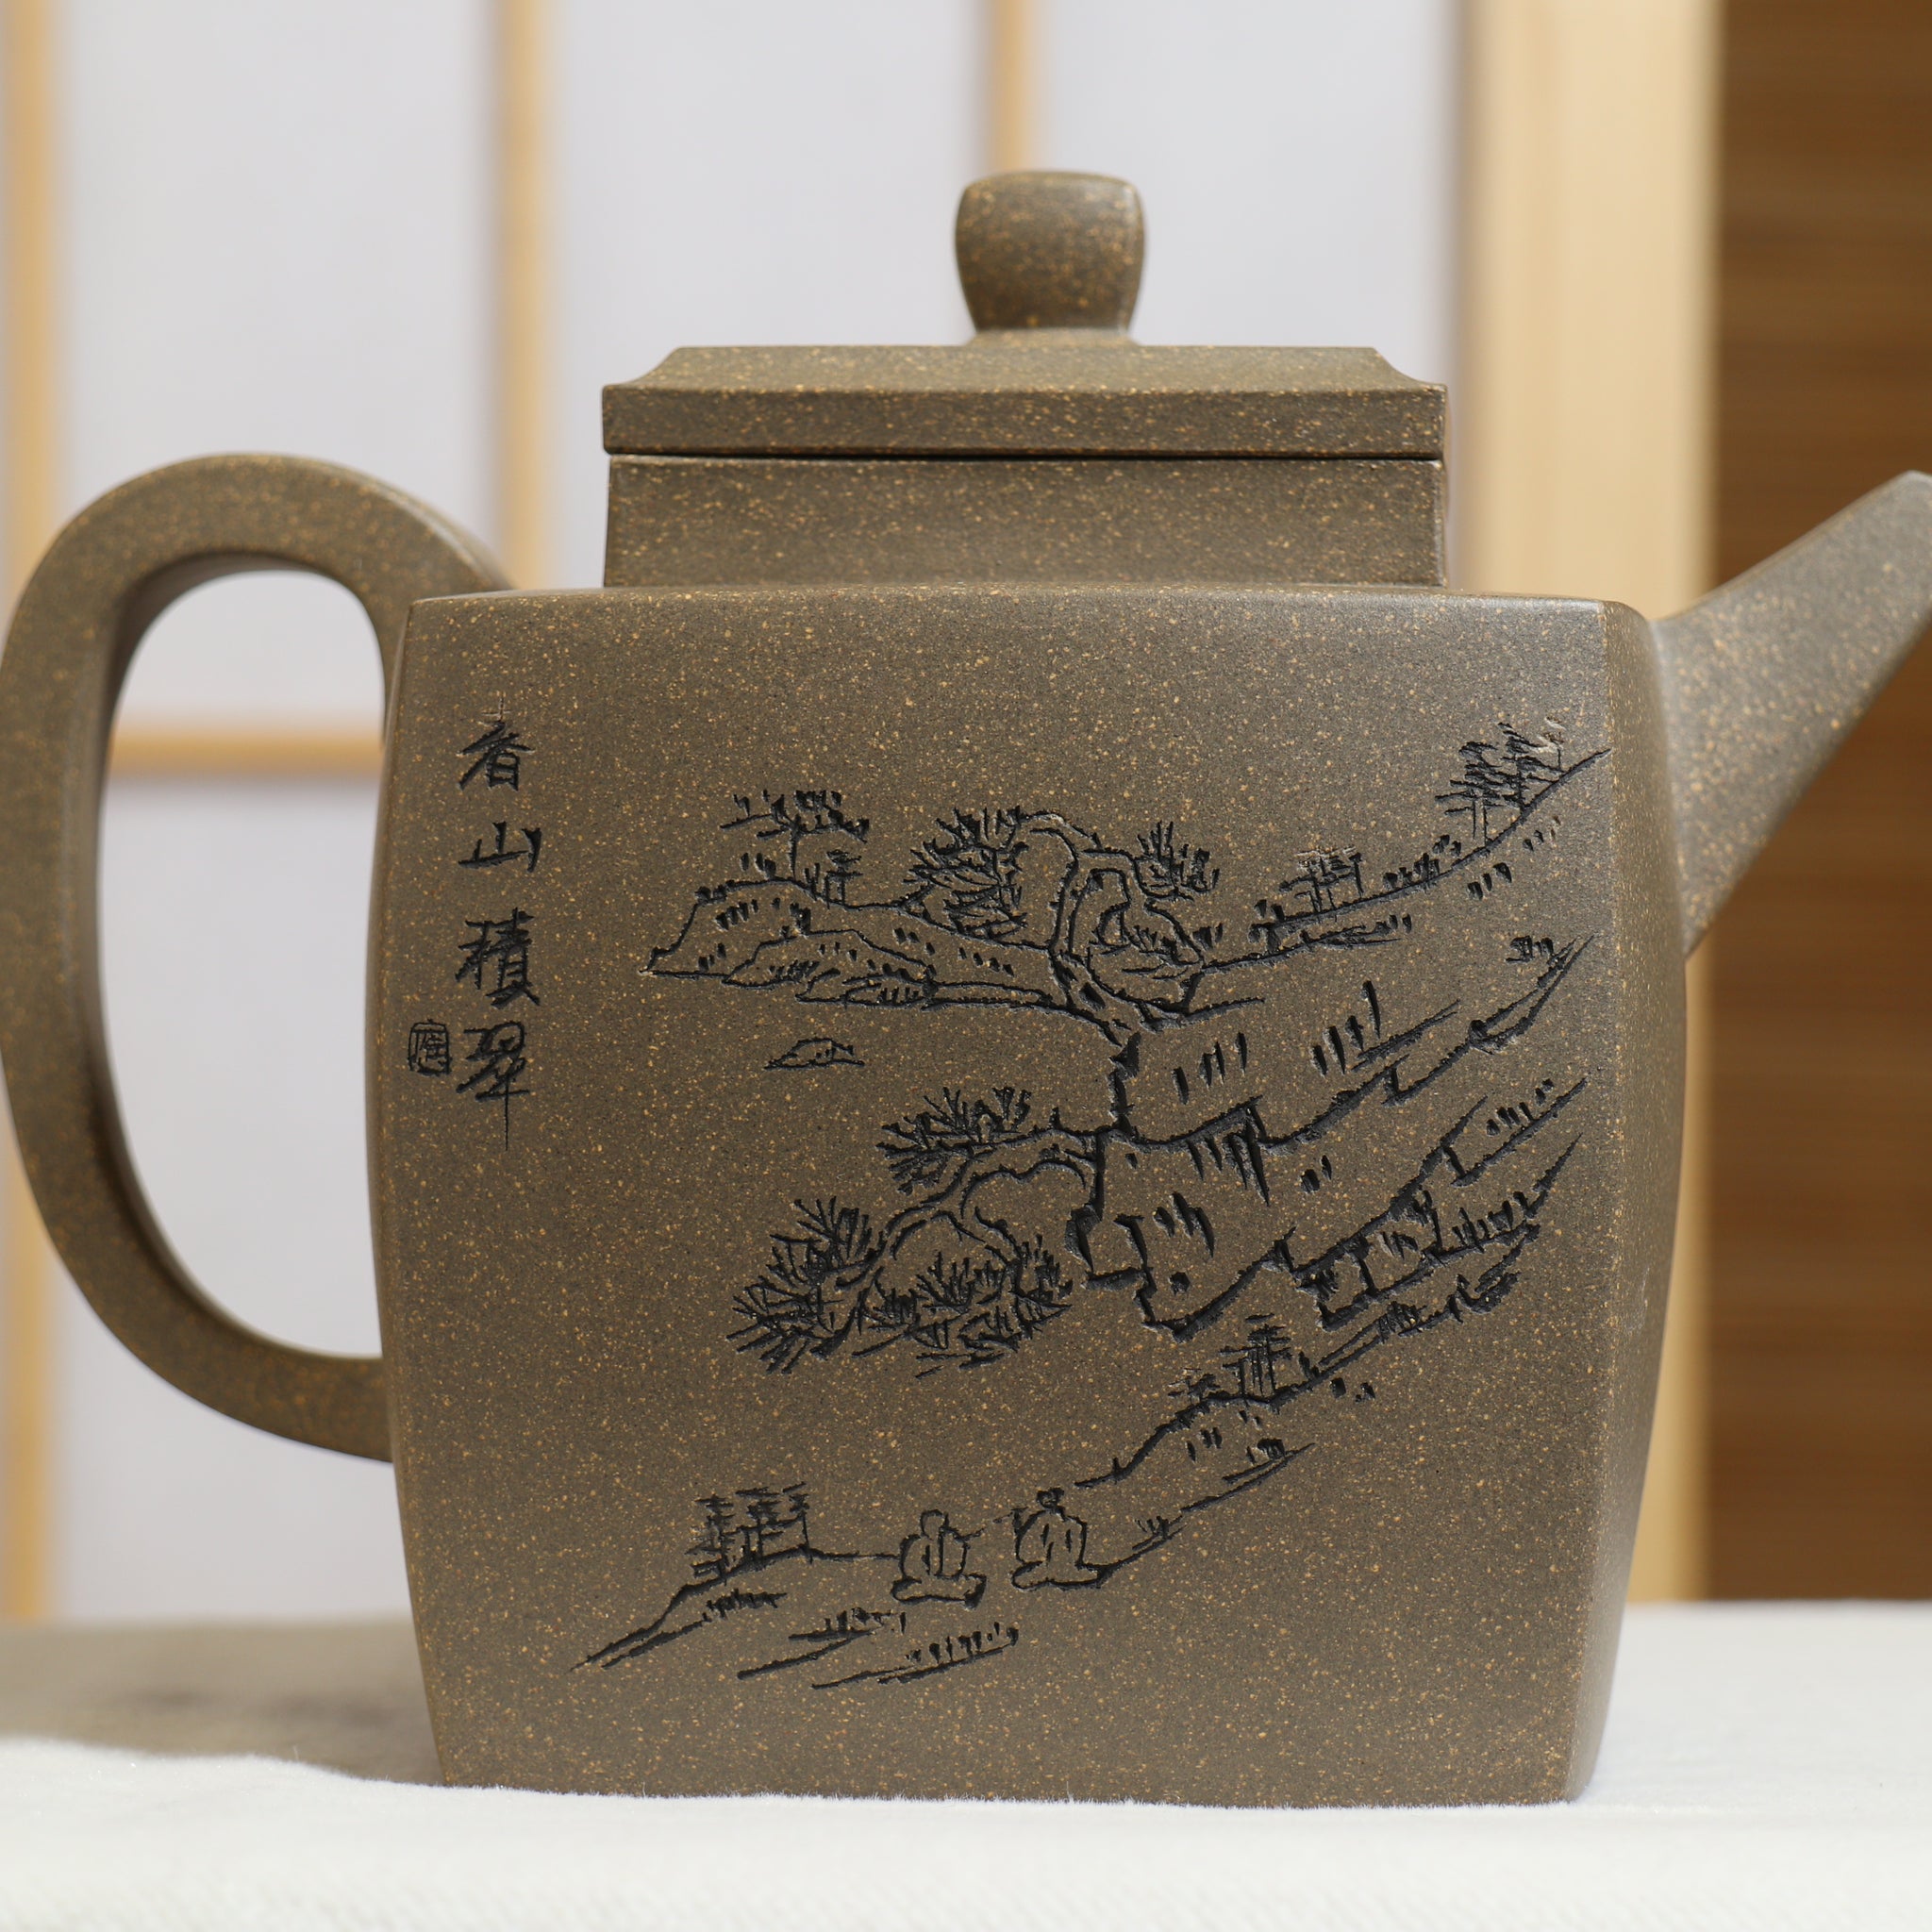 【四方安樂】原礦青段泥刻畫書法紫砂茶壺